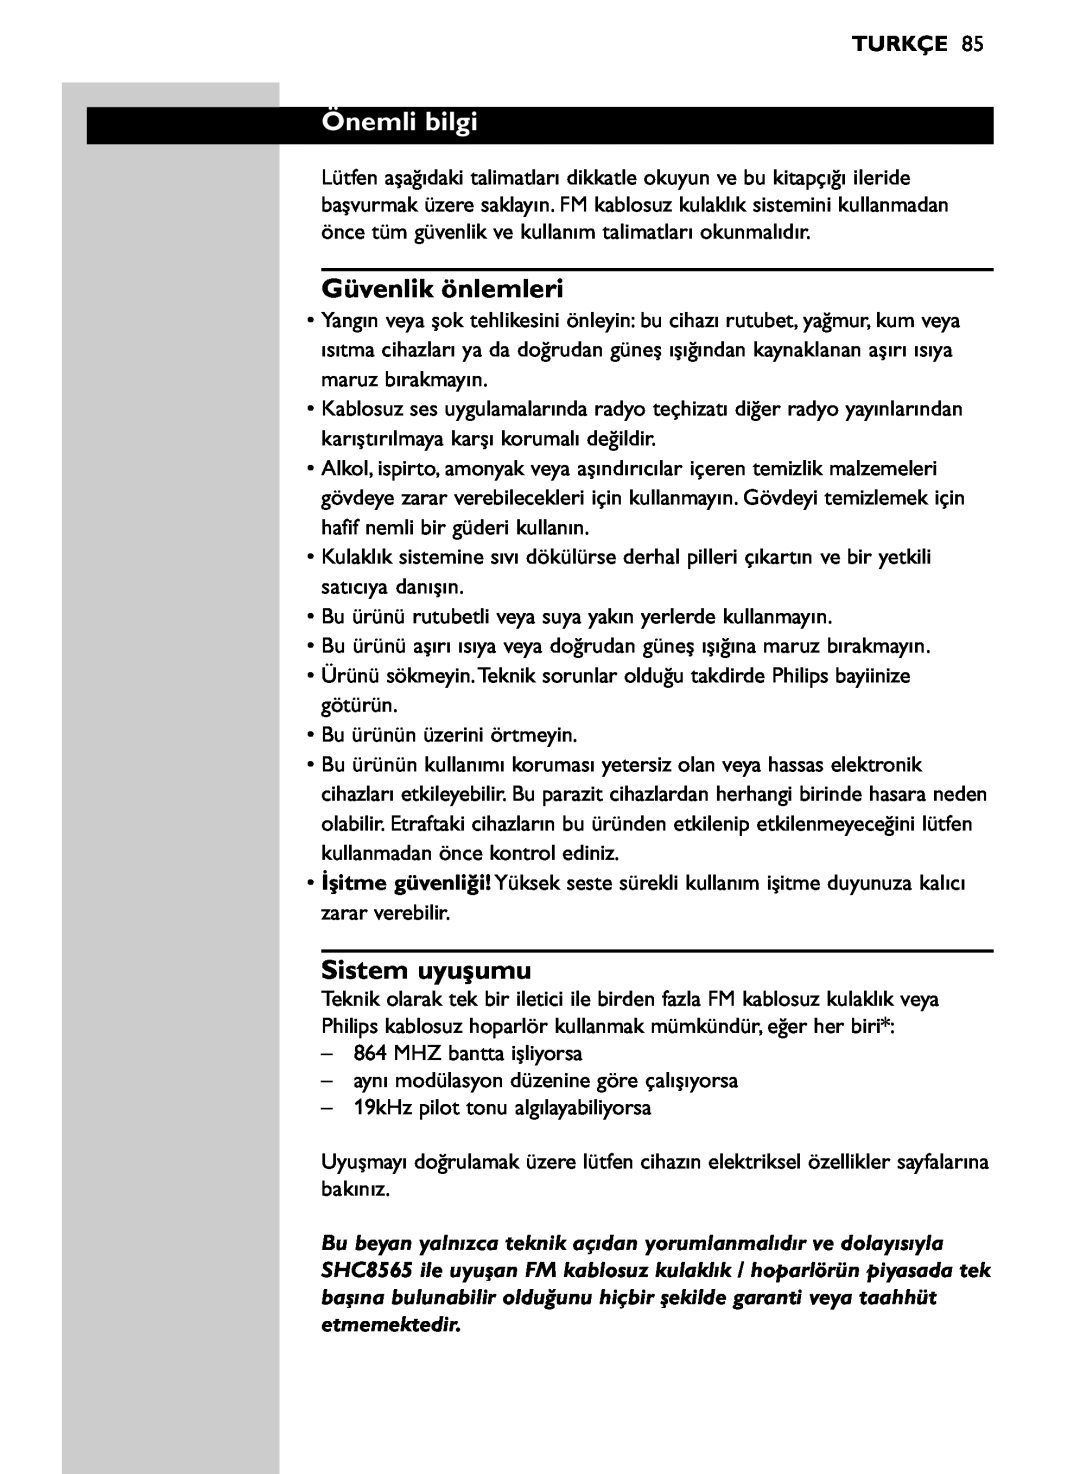 Philips SHC8565/00 manual Önemli bilgi, Güvenlik önlemleri, Sistem uyuşumu, Turkçe 